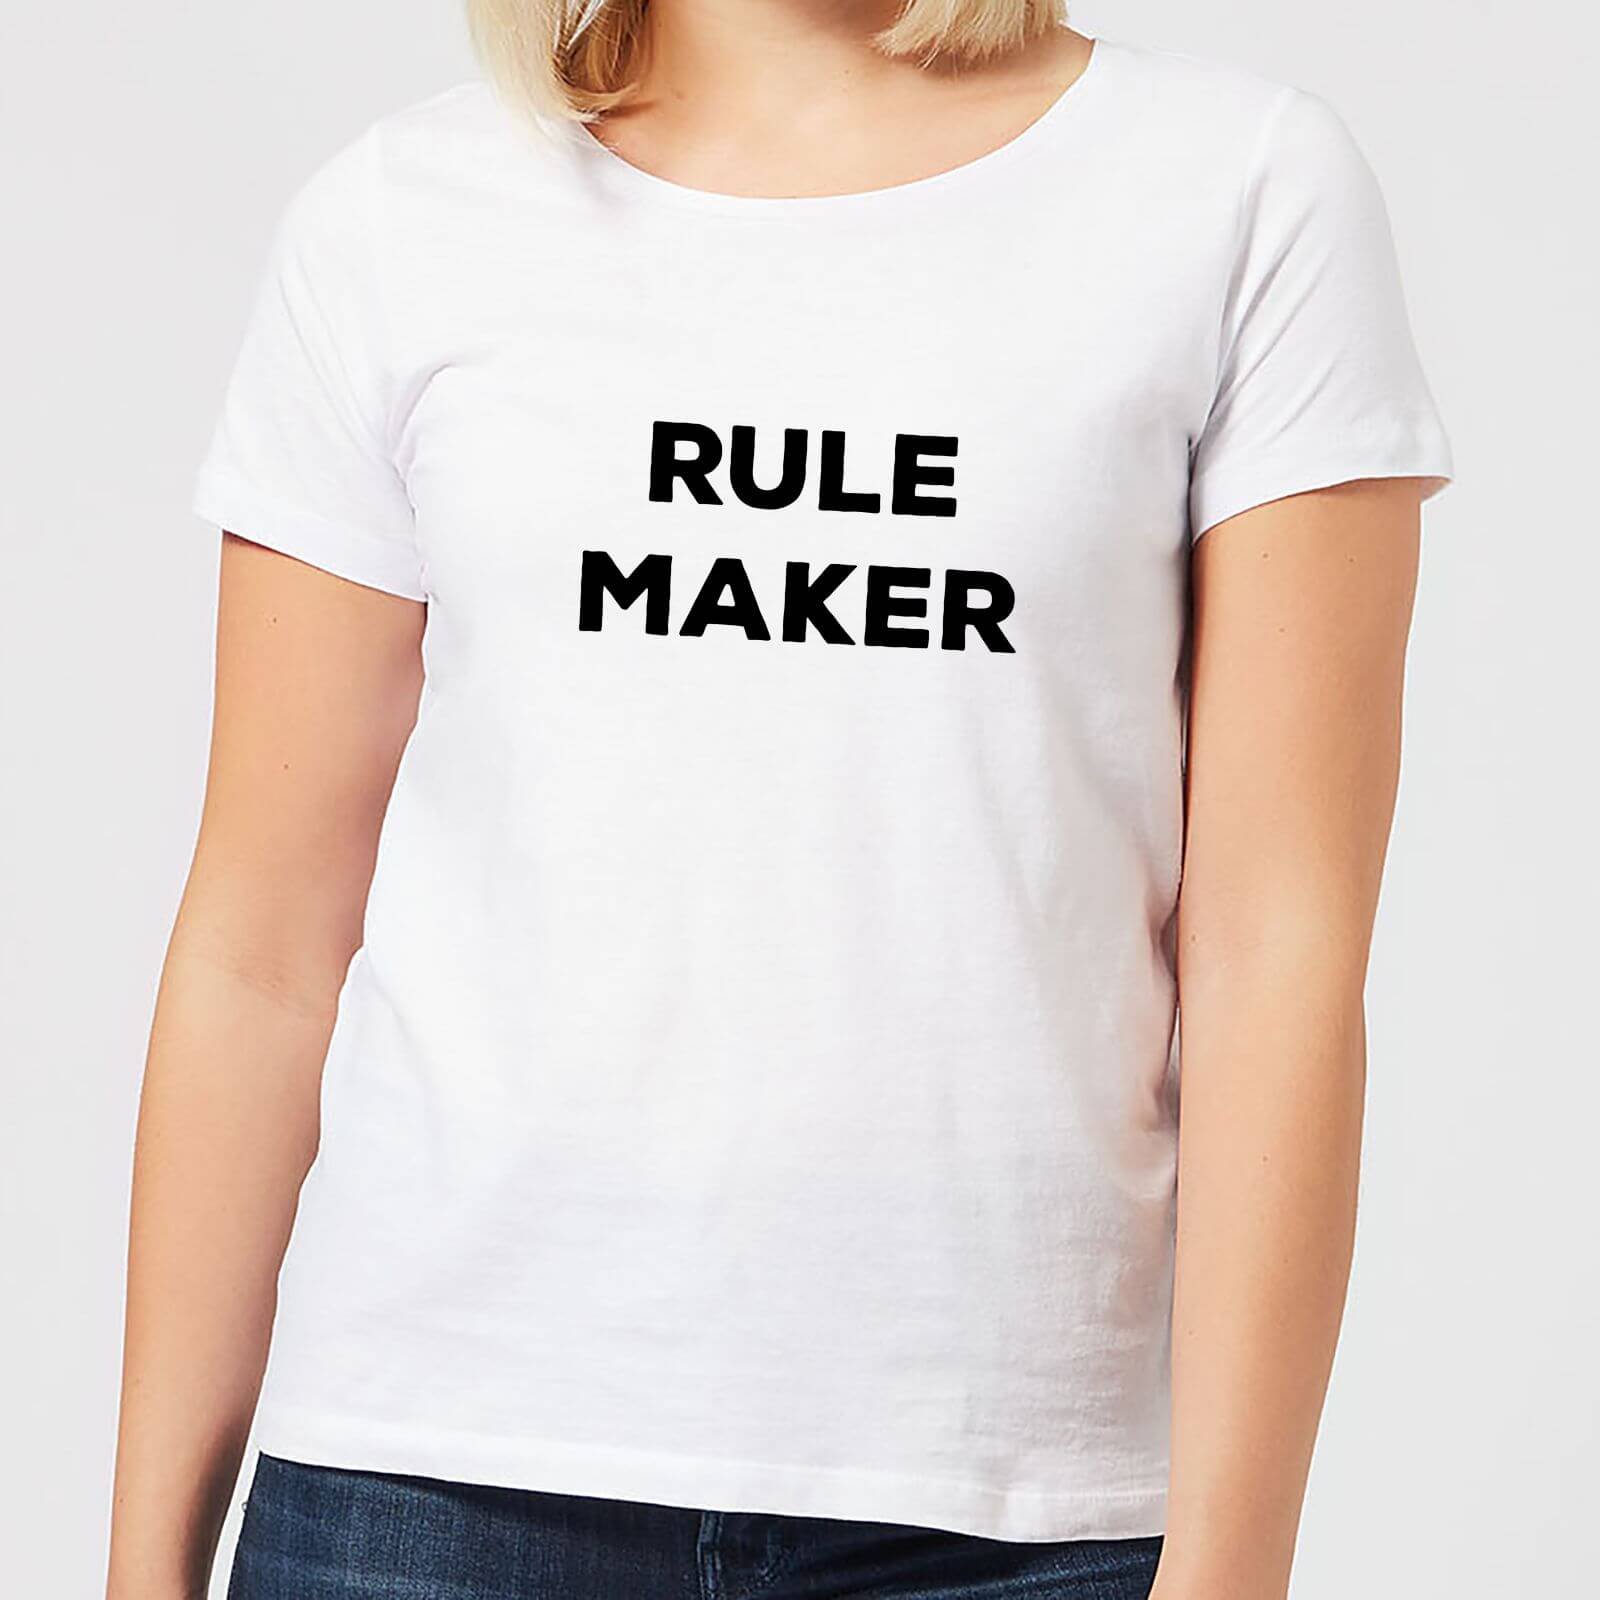 Rule Maker Women's T-Shirt - White - S - White